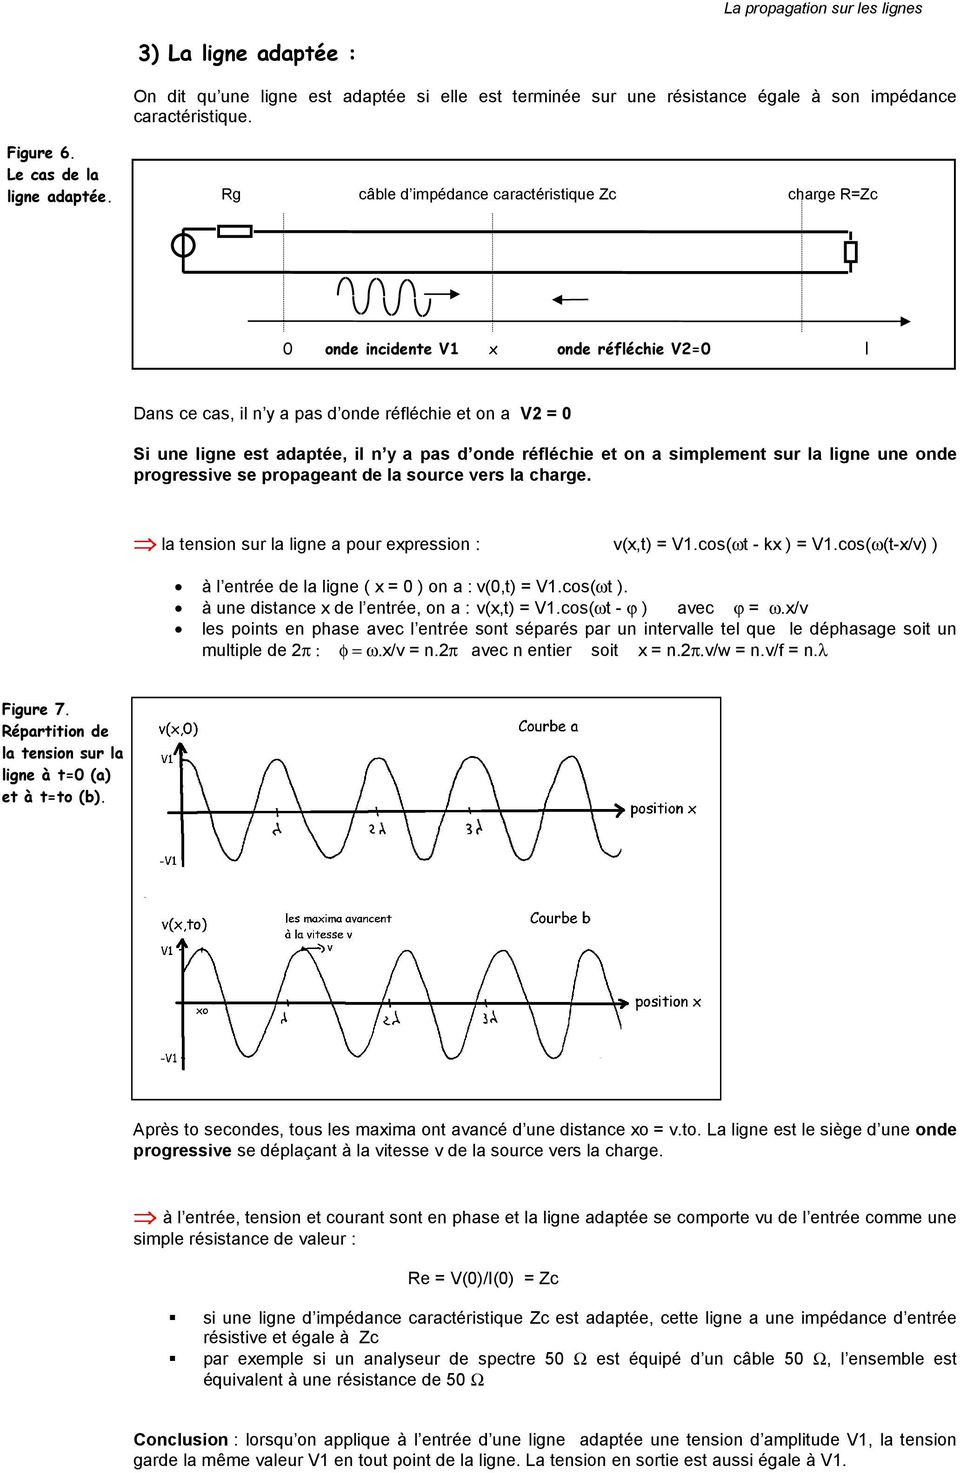 réfléchie et on a simplement sur la ligne une onde progressive se propageant de la source vers la charge. la tension sur la ligne a pour expression : v(x,t) = V1.cos(ωt - kx ) = V1.